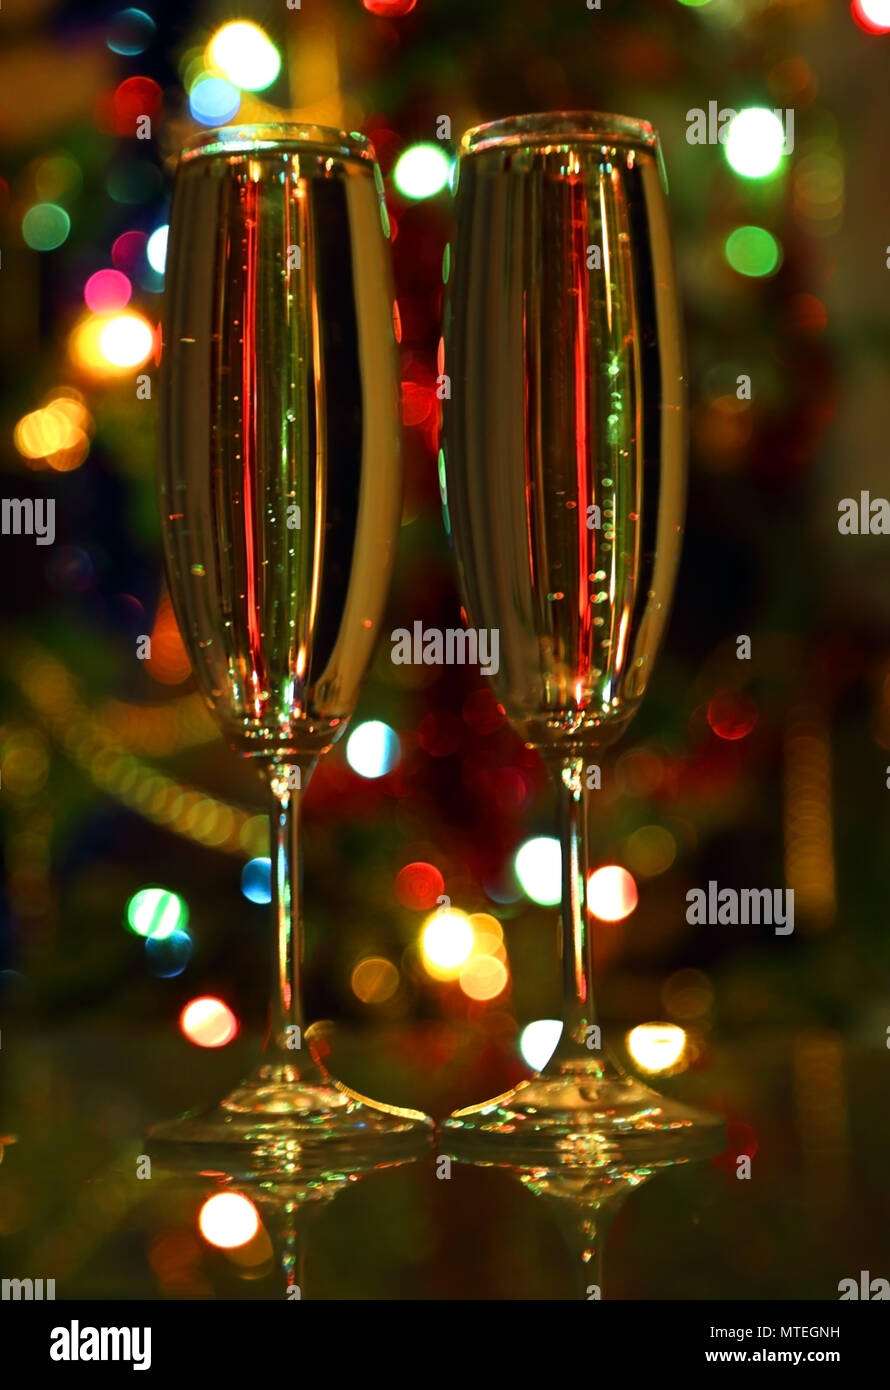 https://c8.alamy.com/comp/MTEGNH/glasses-with-champagne-against-festive-lights-MTEGNH.jpg